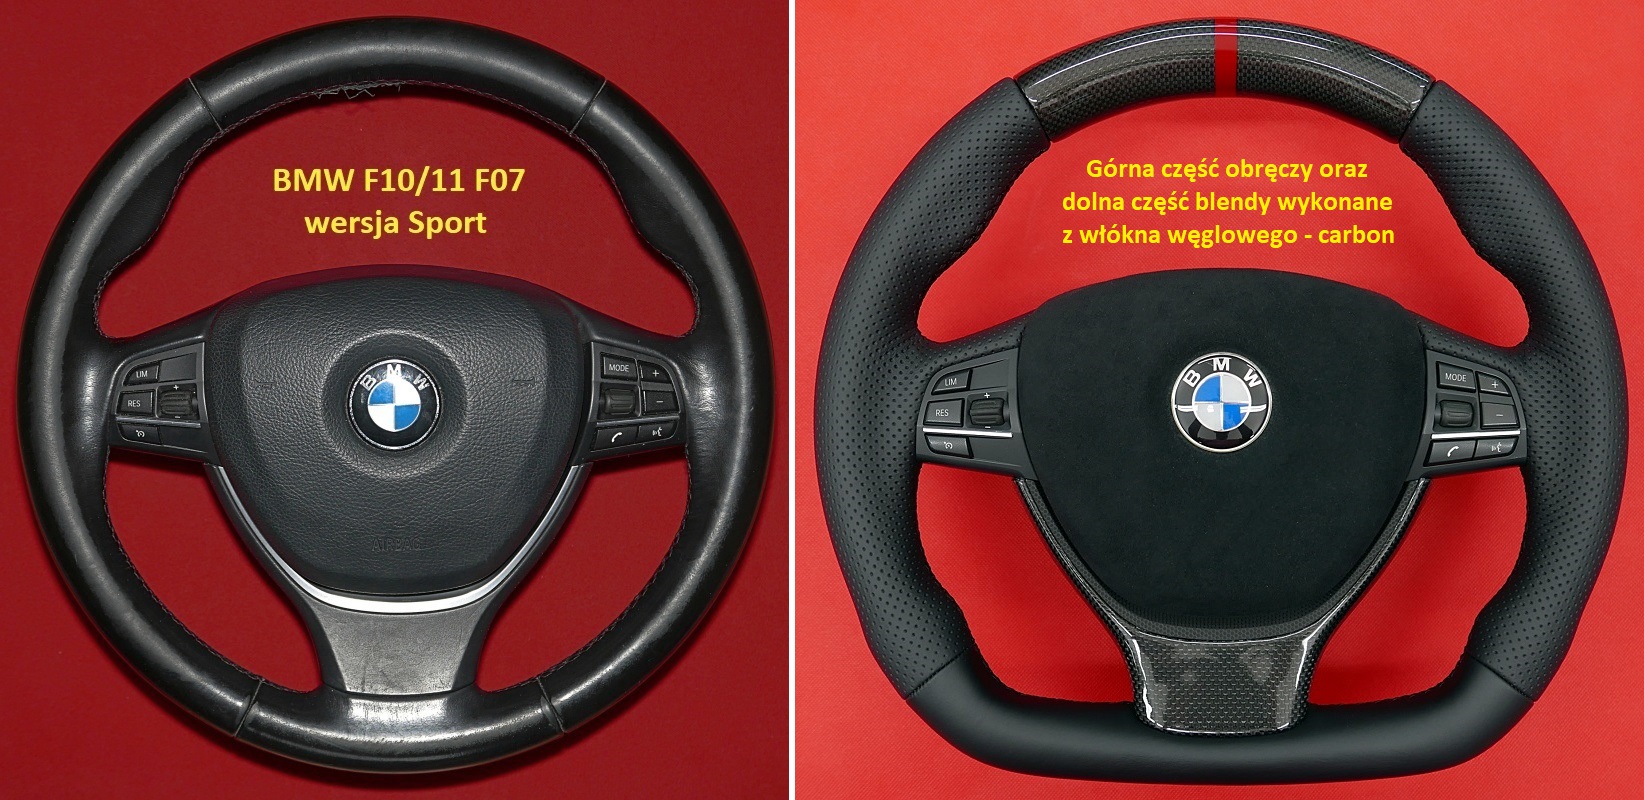 BMW F10 F13 carbon fiber steering wheel, kierownica BMW F10 F13 z włókna węglowego carbon